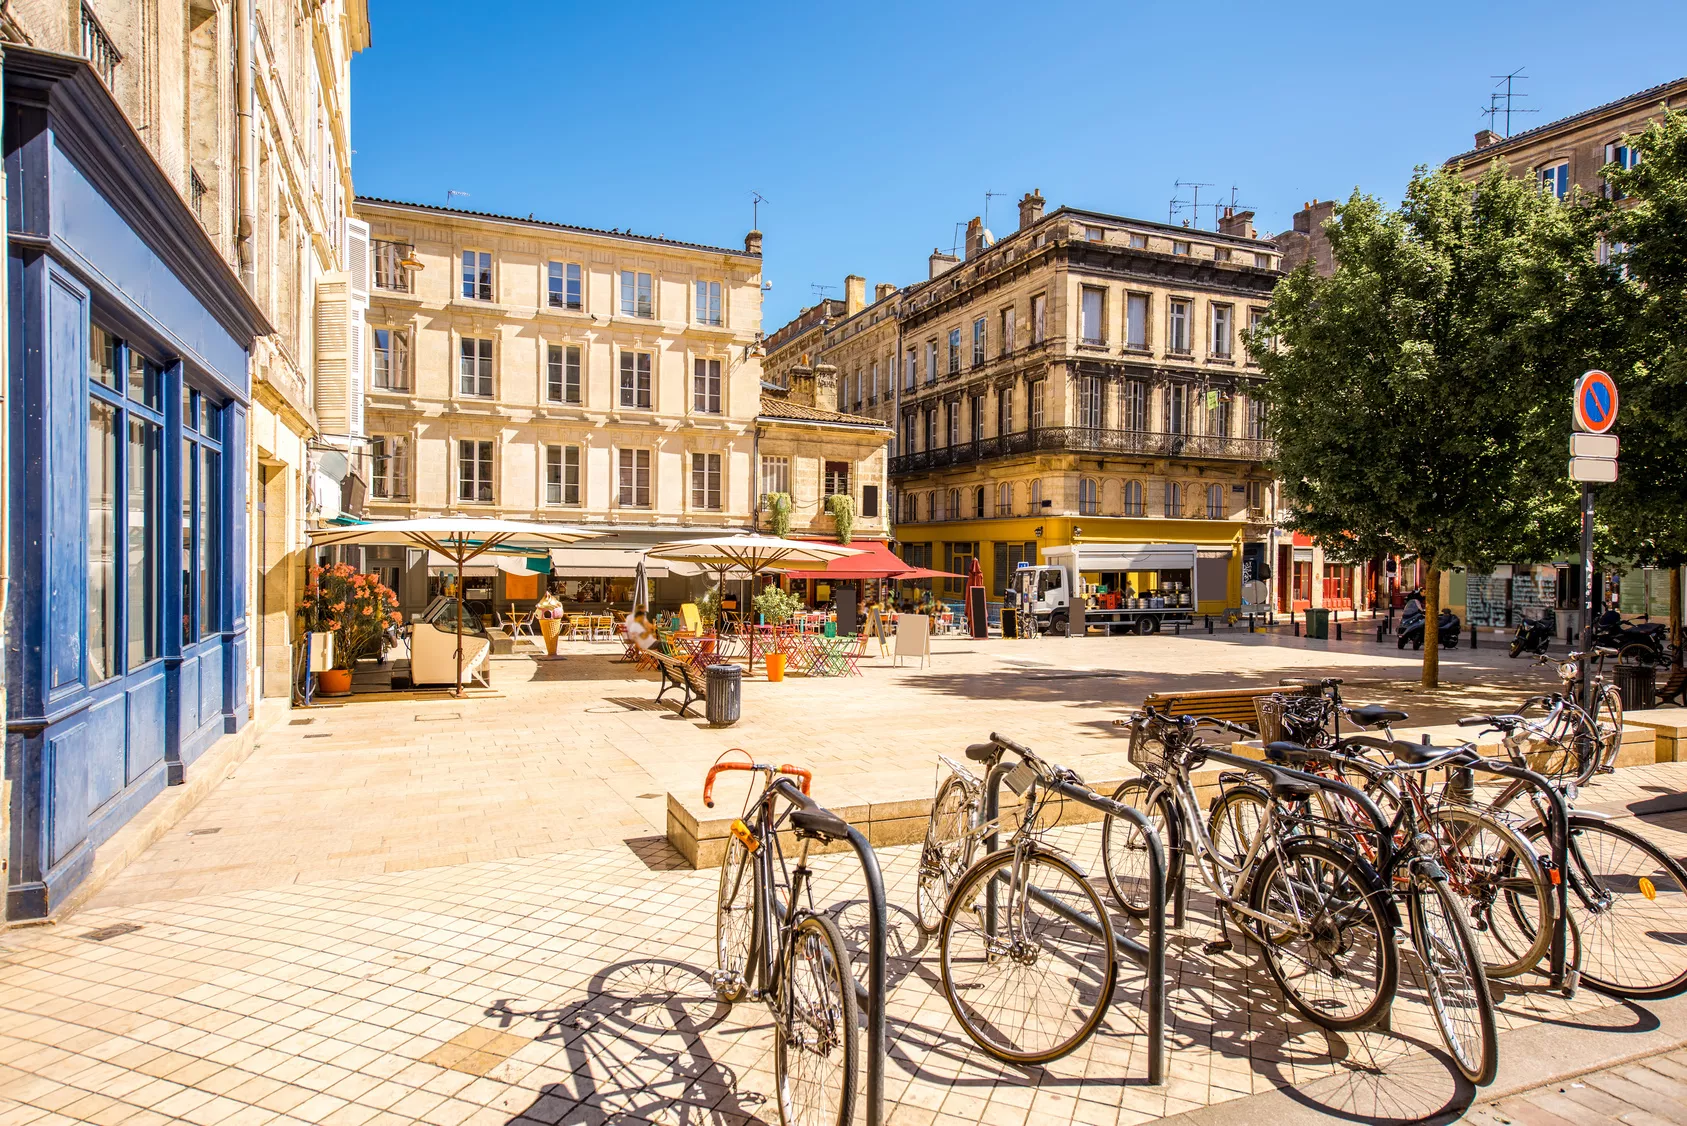 image4 - Les Joyaux Cachés de Bordeaux : Découvrez les Plus Belles Places de la Ville